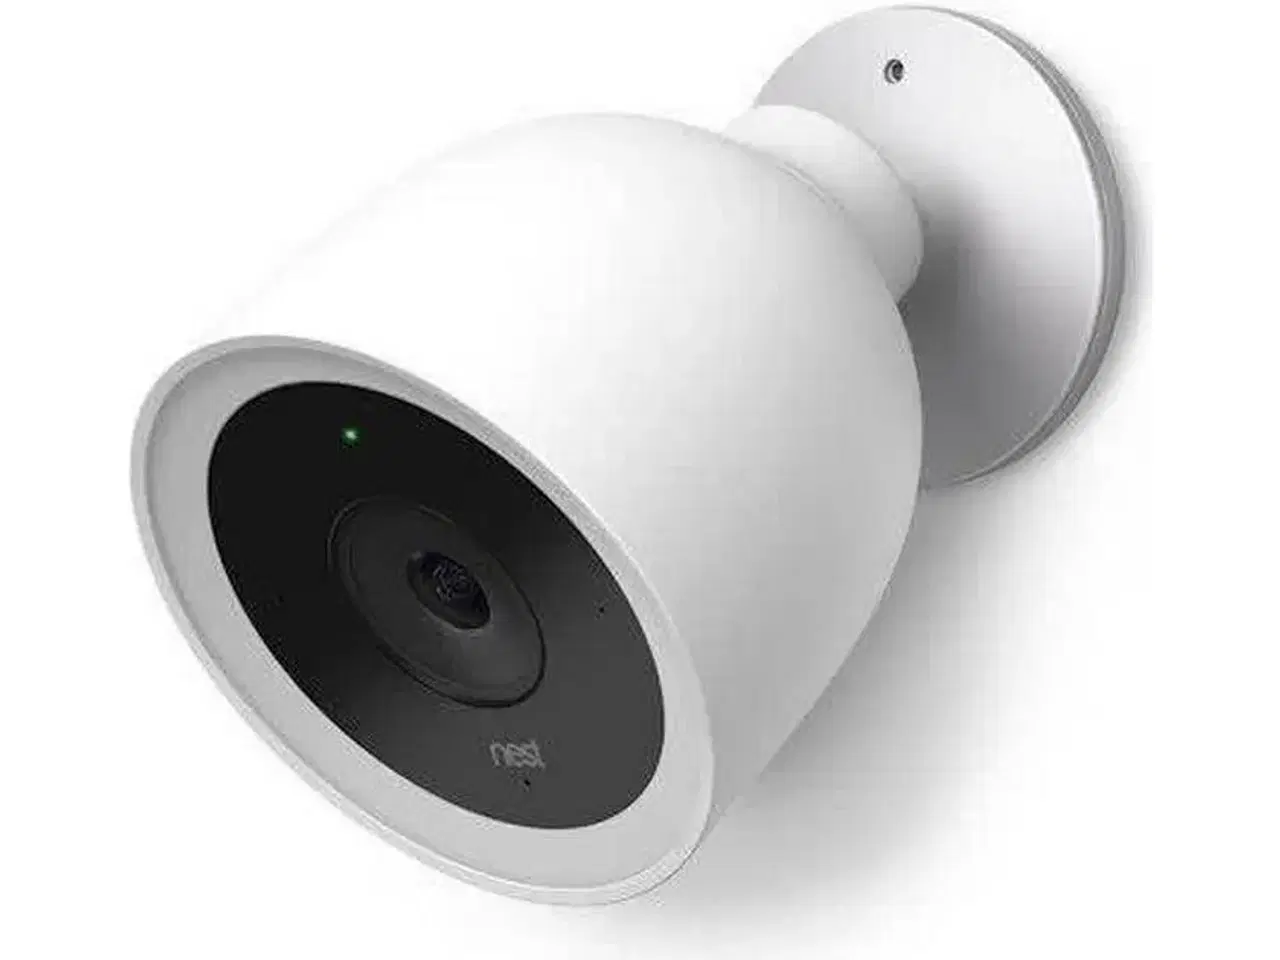 Billede 2 - Google Nest Kamera købes 